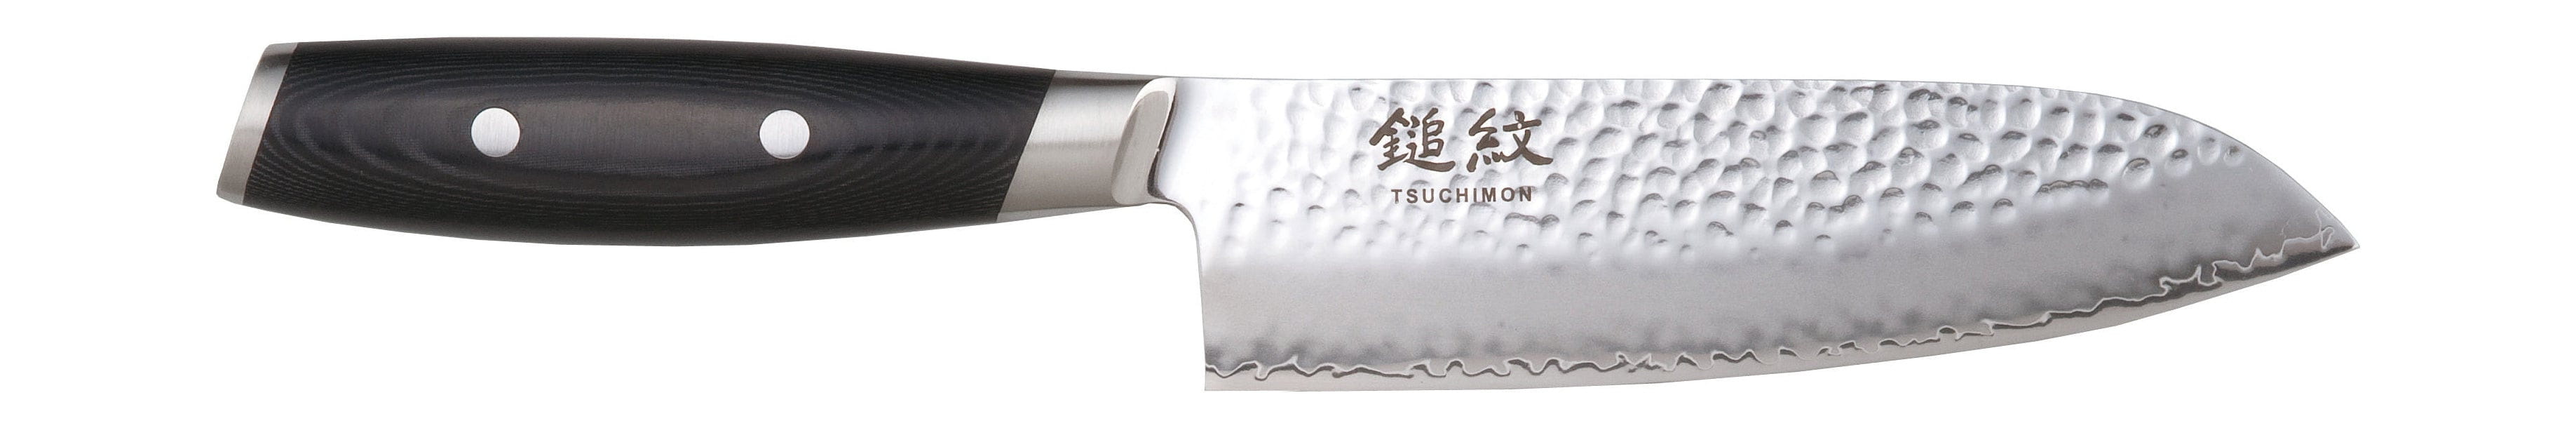 Cuchillo de yaxell tsuchimon santoku, 16,5 cm